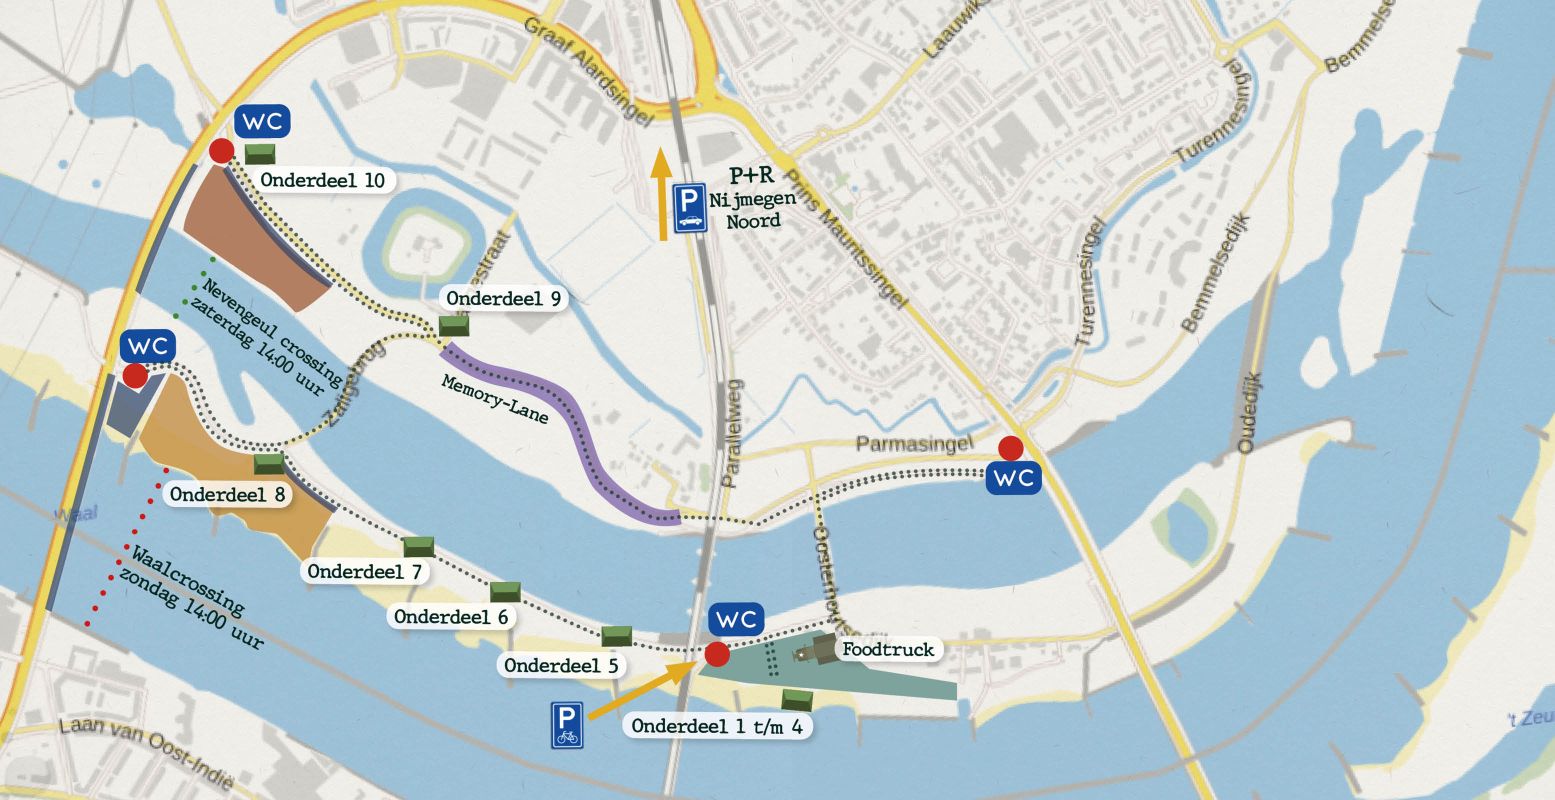 Bekijk de plattegrond van het evenemententerrein van de Waalcrossing. Foto: Waalcrossing Nijmegen